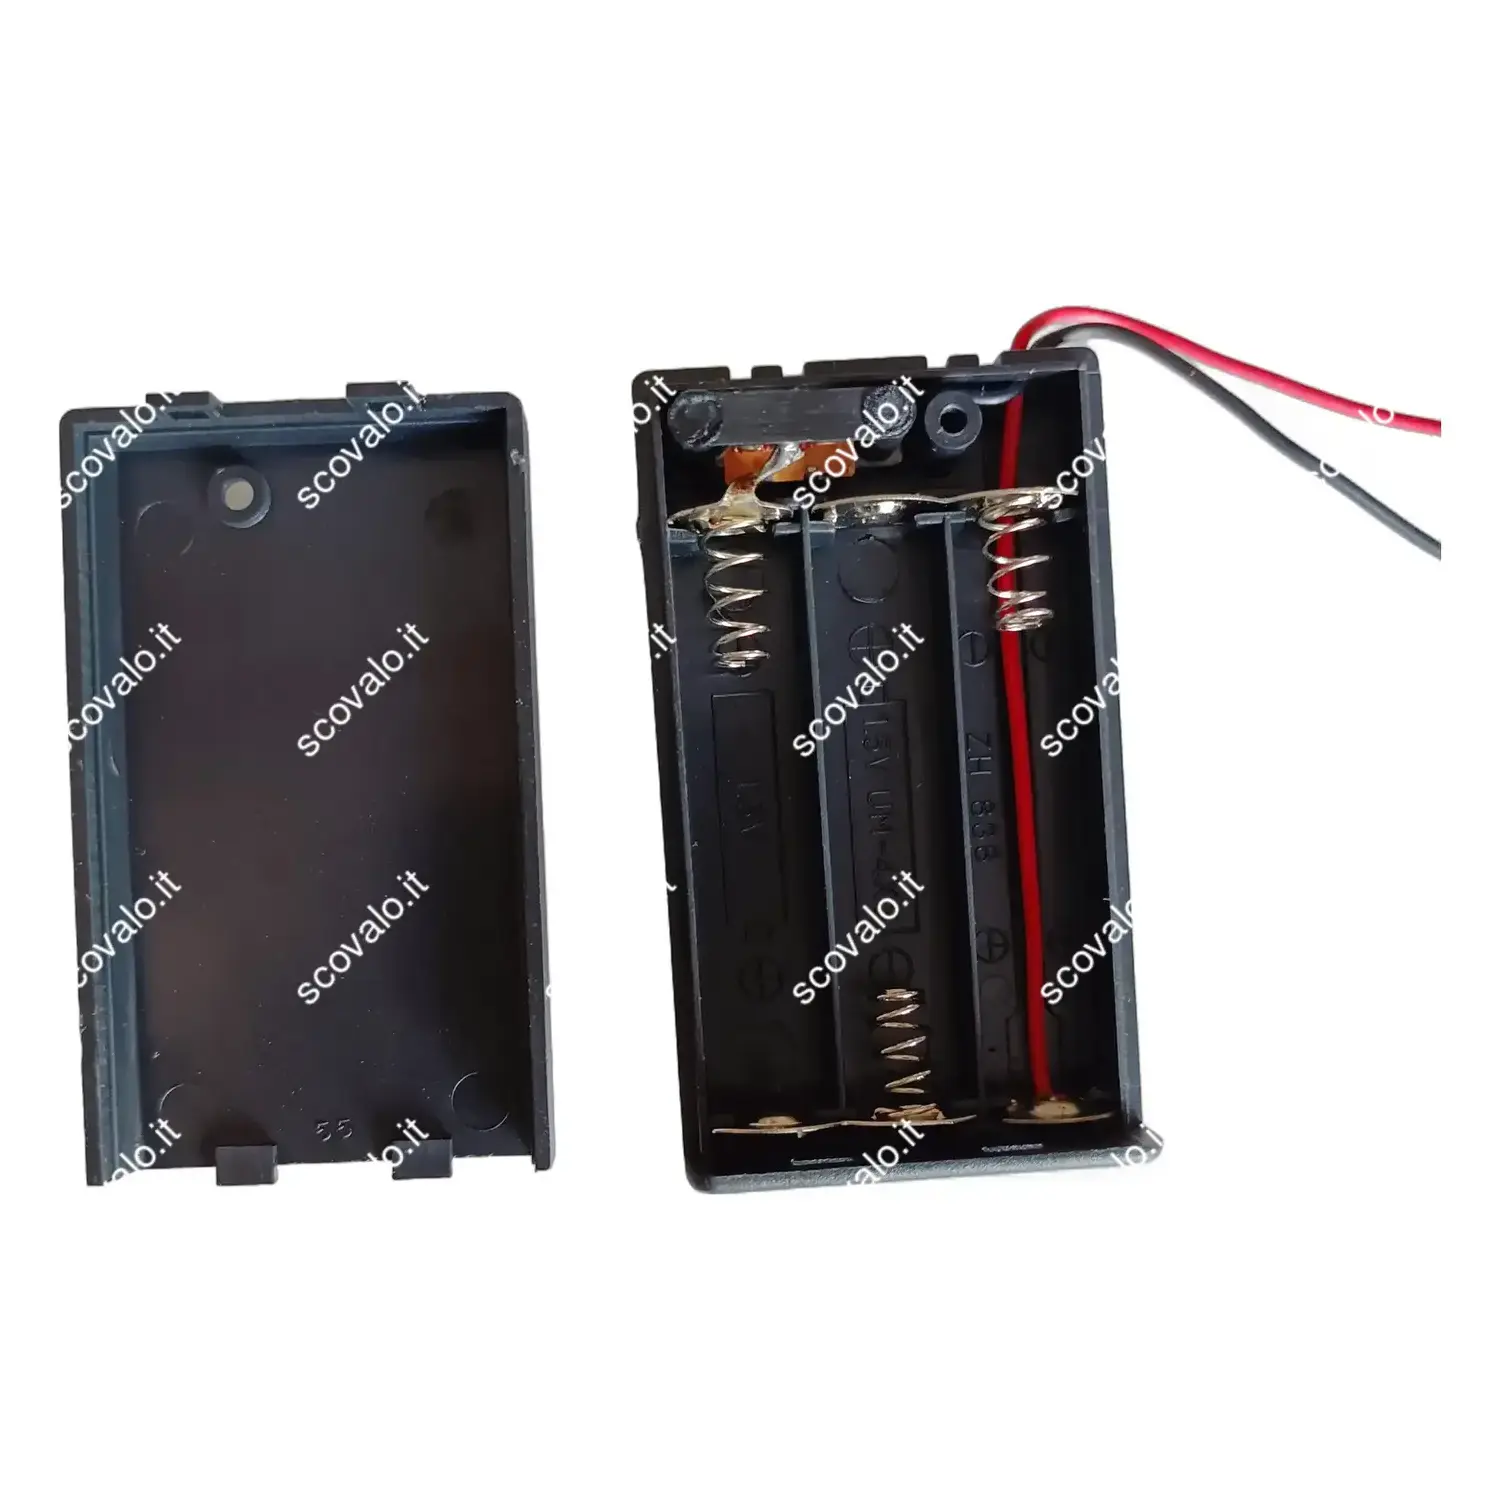 immagine portabatterie 3 x mini stilo aaa con interruttore contenitore box batteria